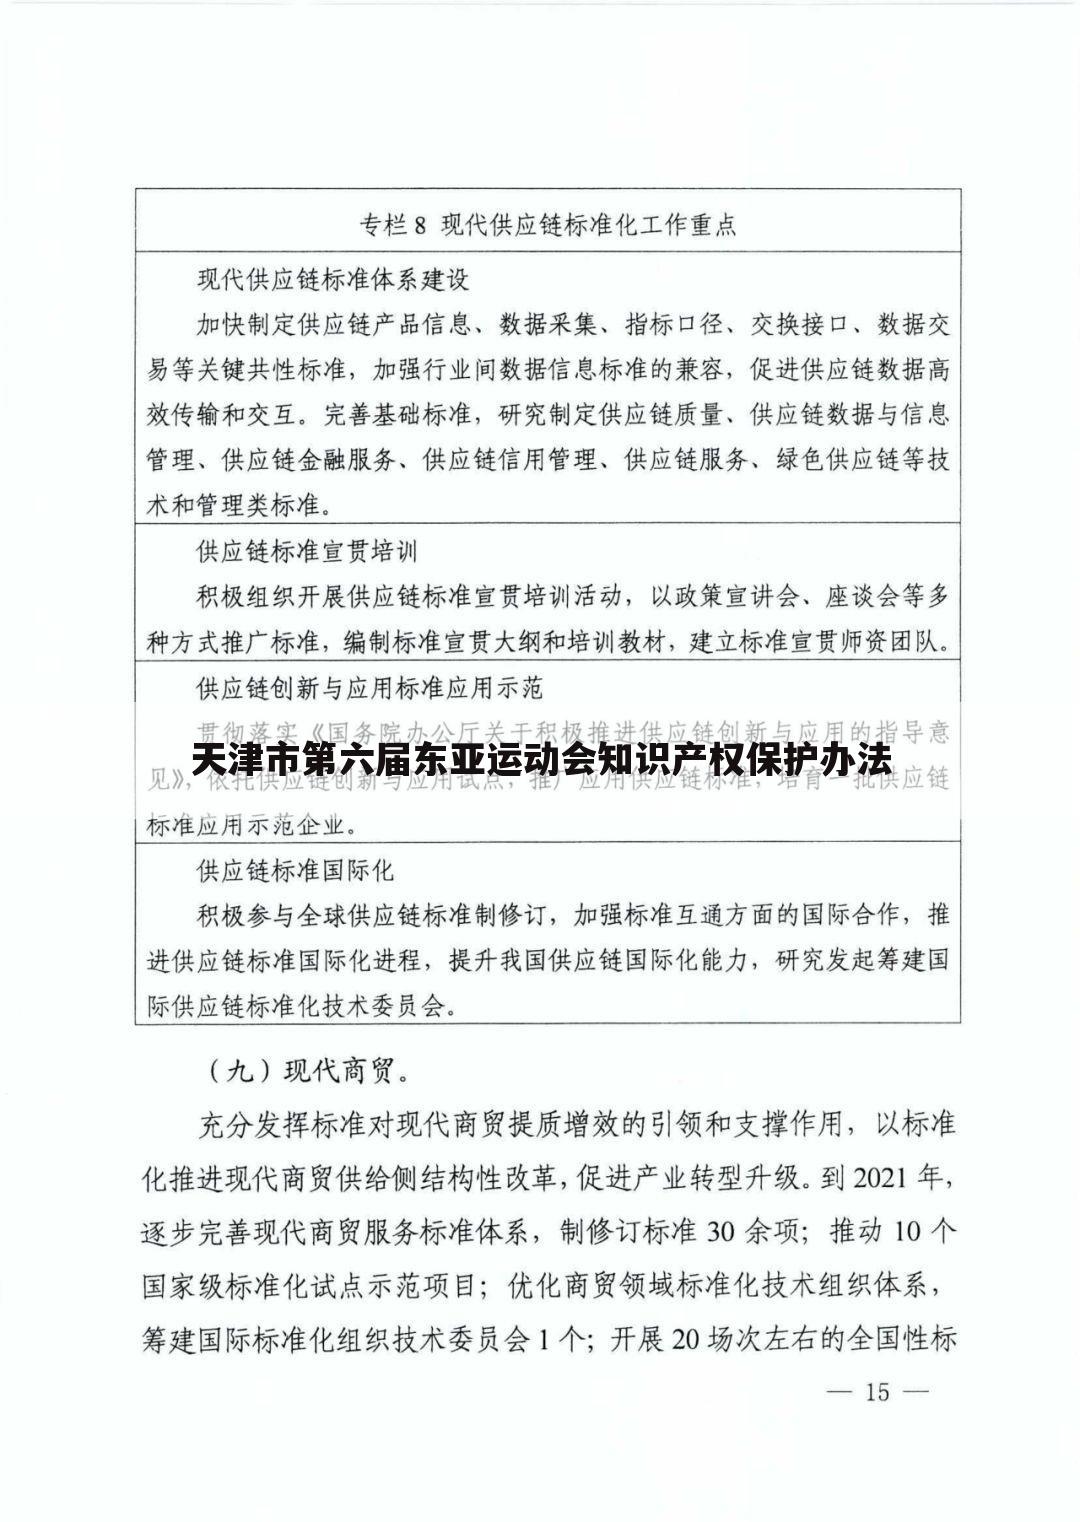 天津市第六届东亚运动会知识产权保护办法